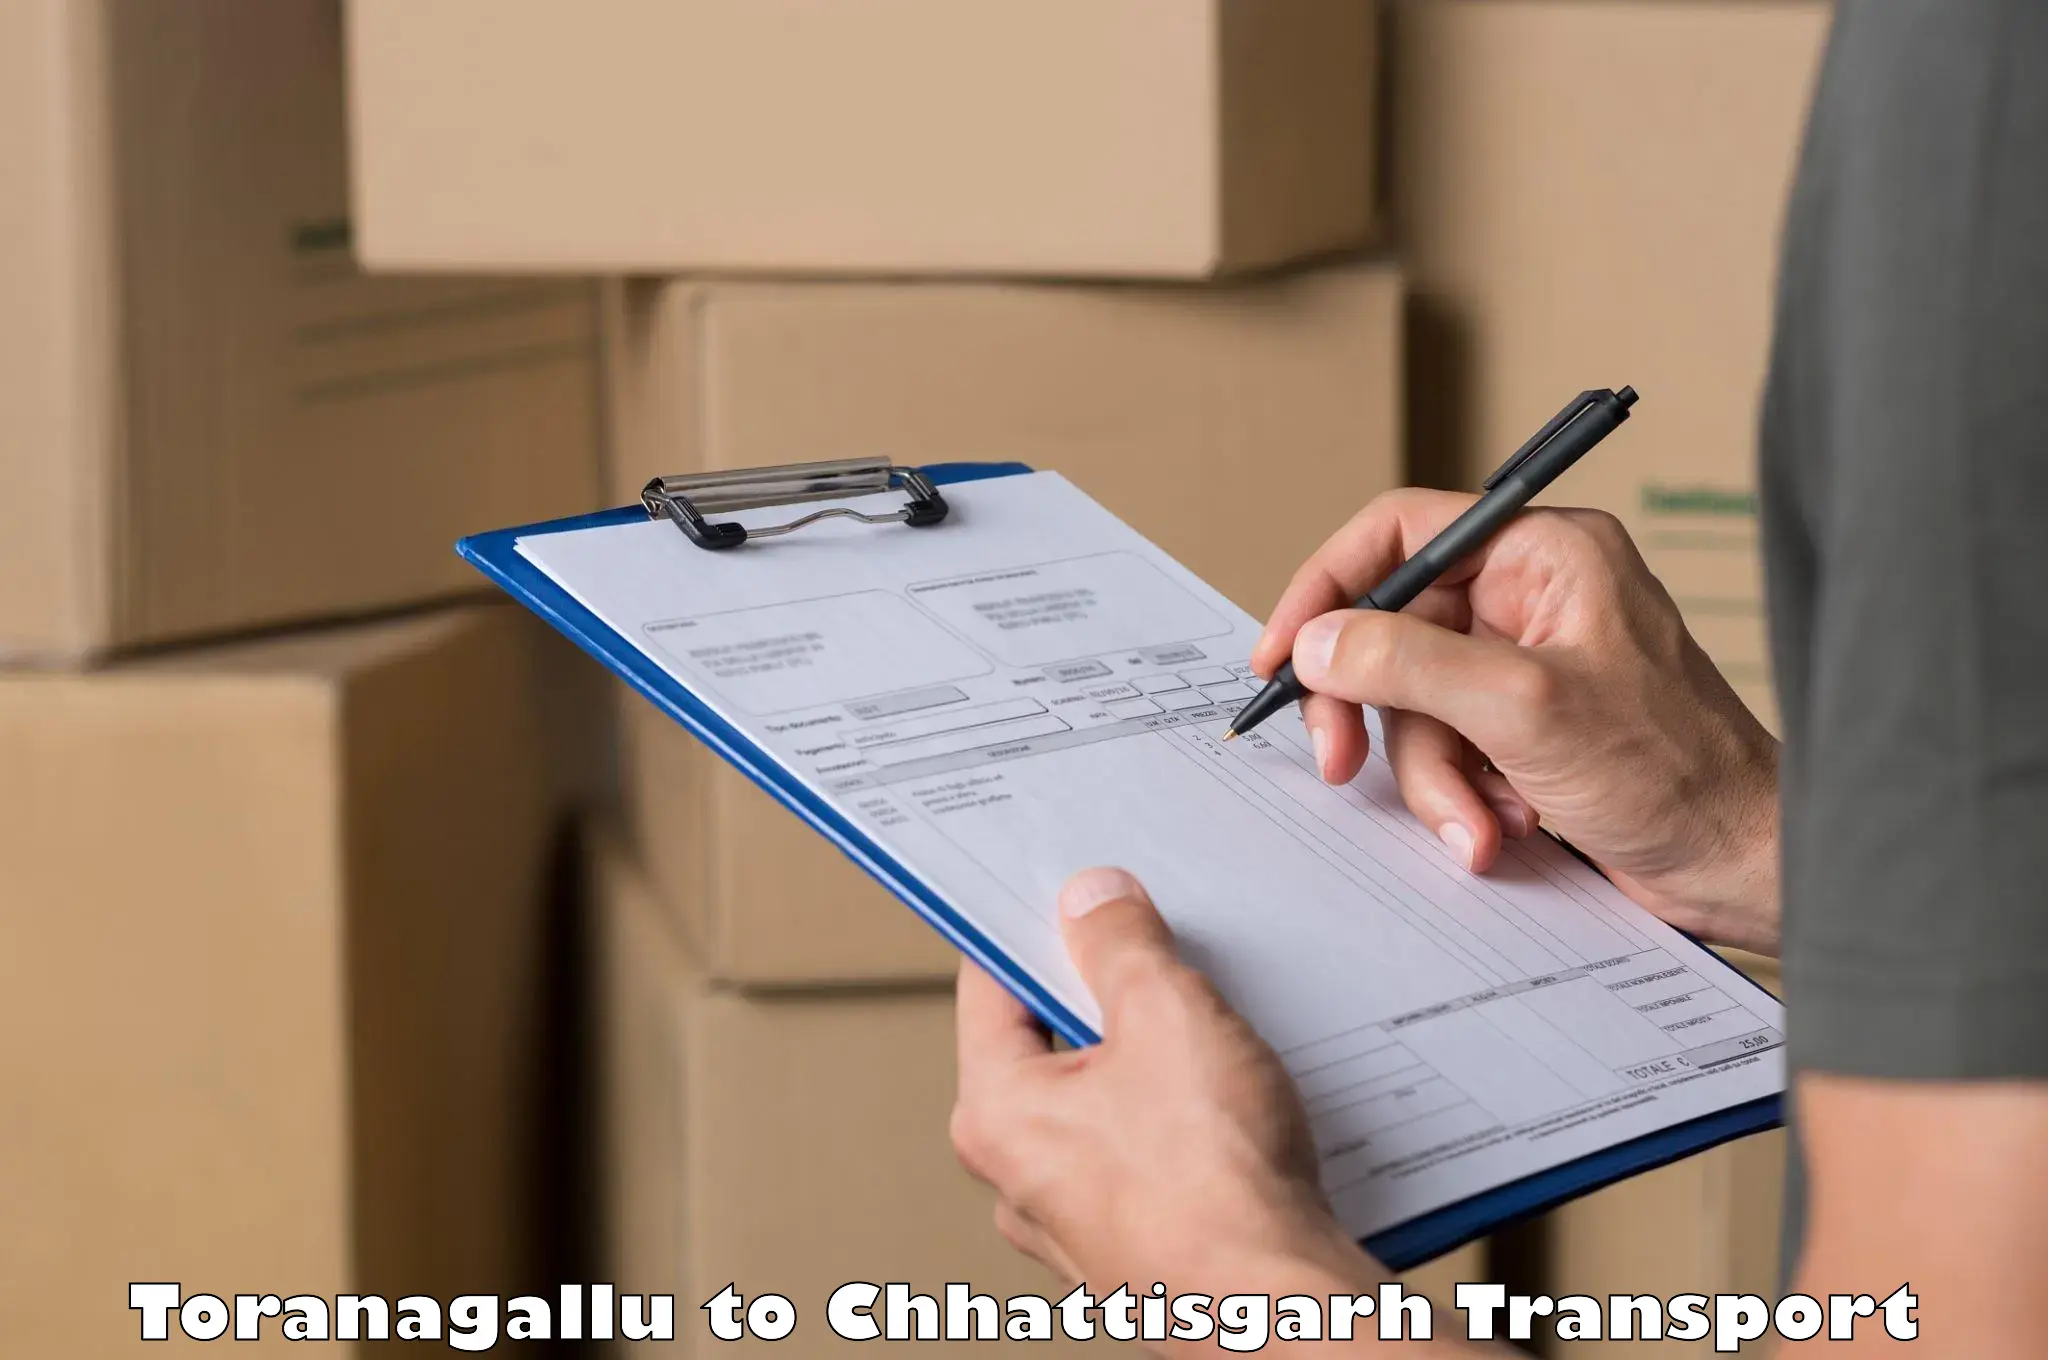 International cargo transportation services Toranagallu to Berla